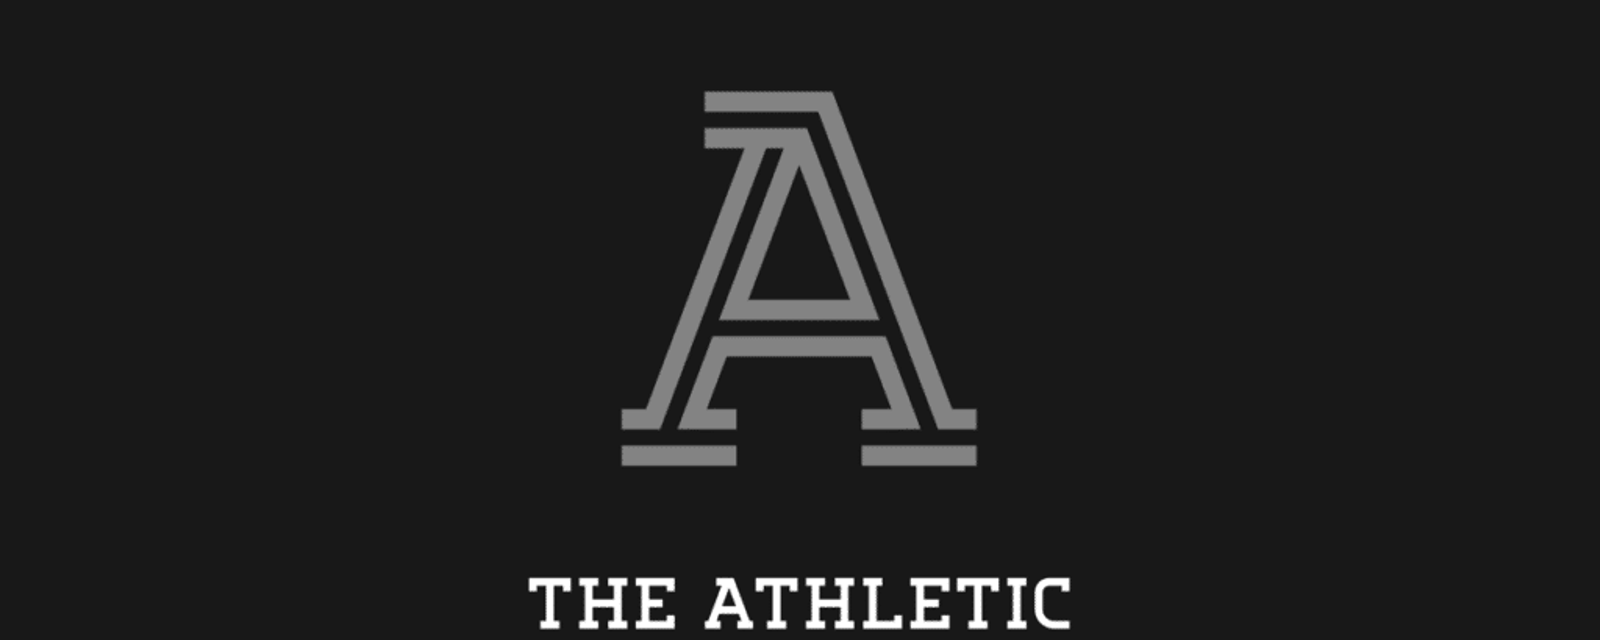 20 journalistes sont congédiés par The Athletic